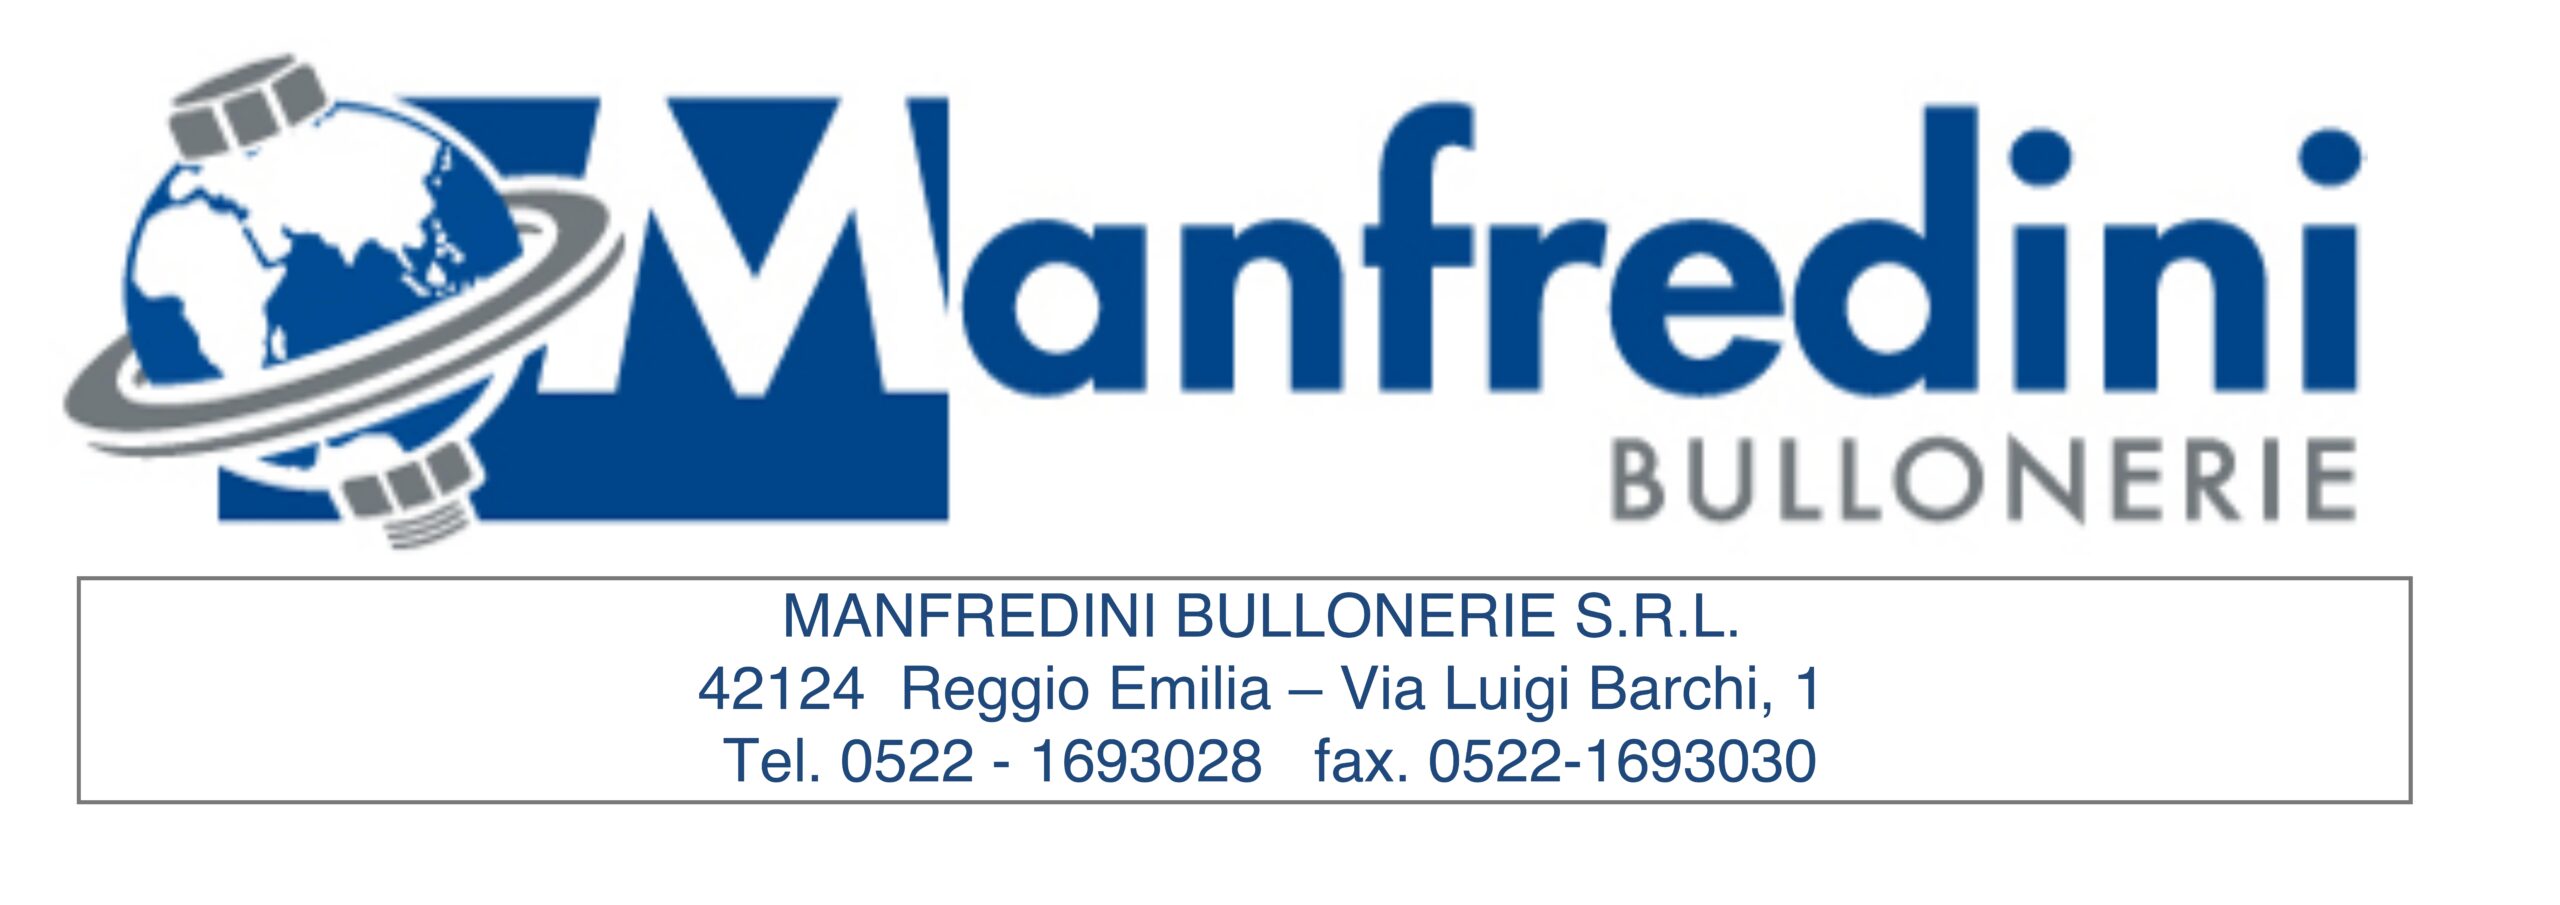 1 Manfredini bulloneria_page-0001-min